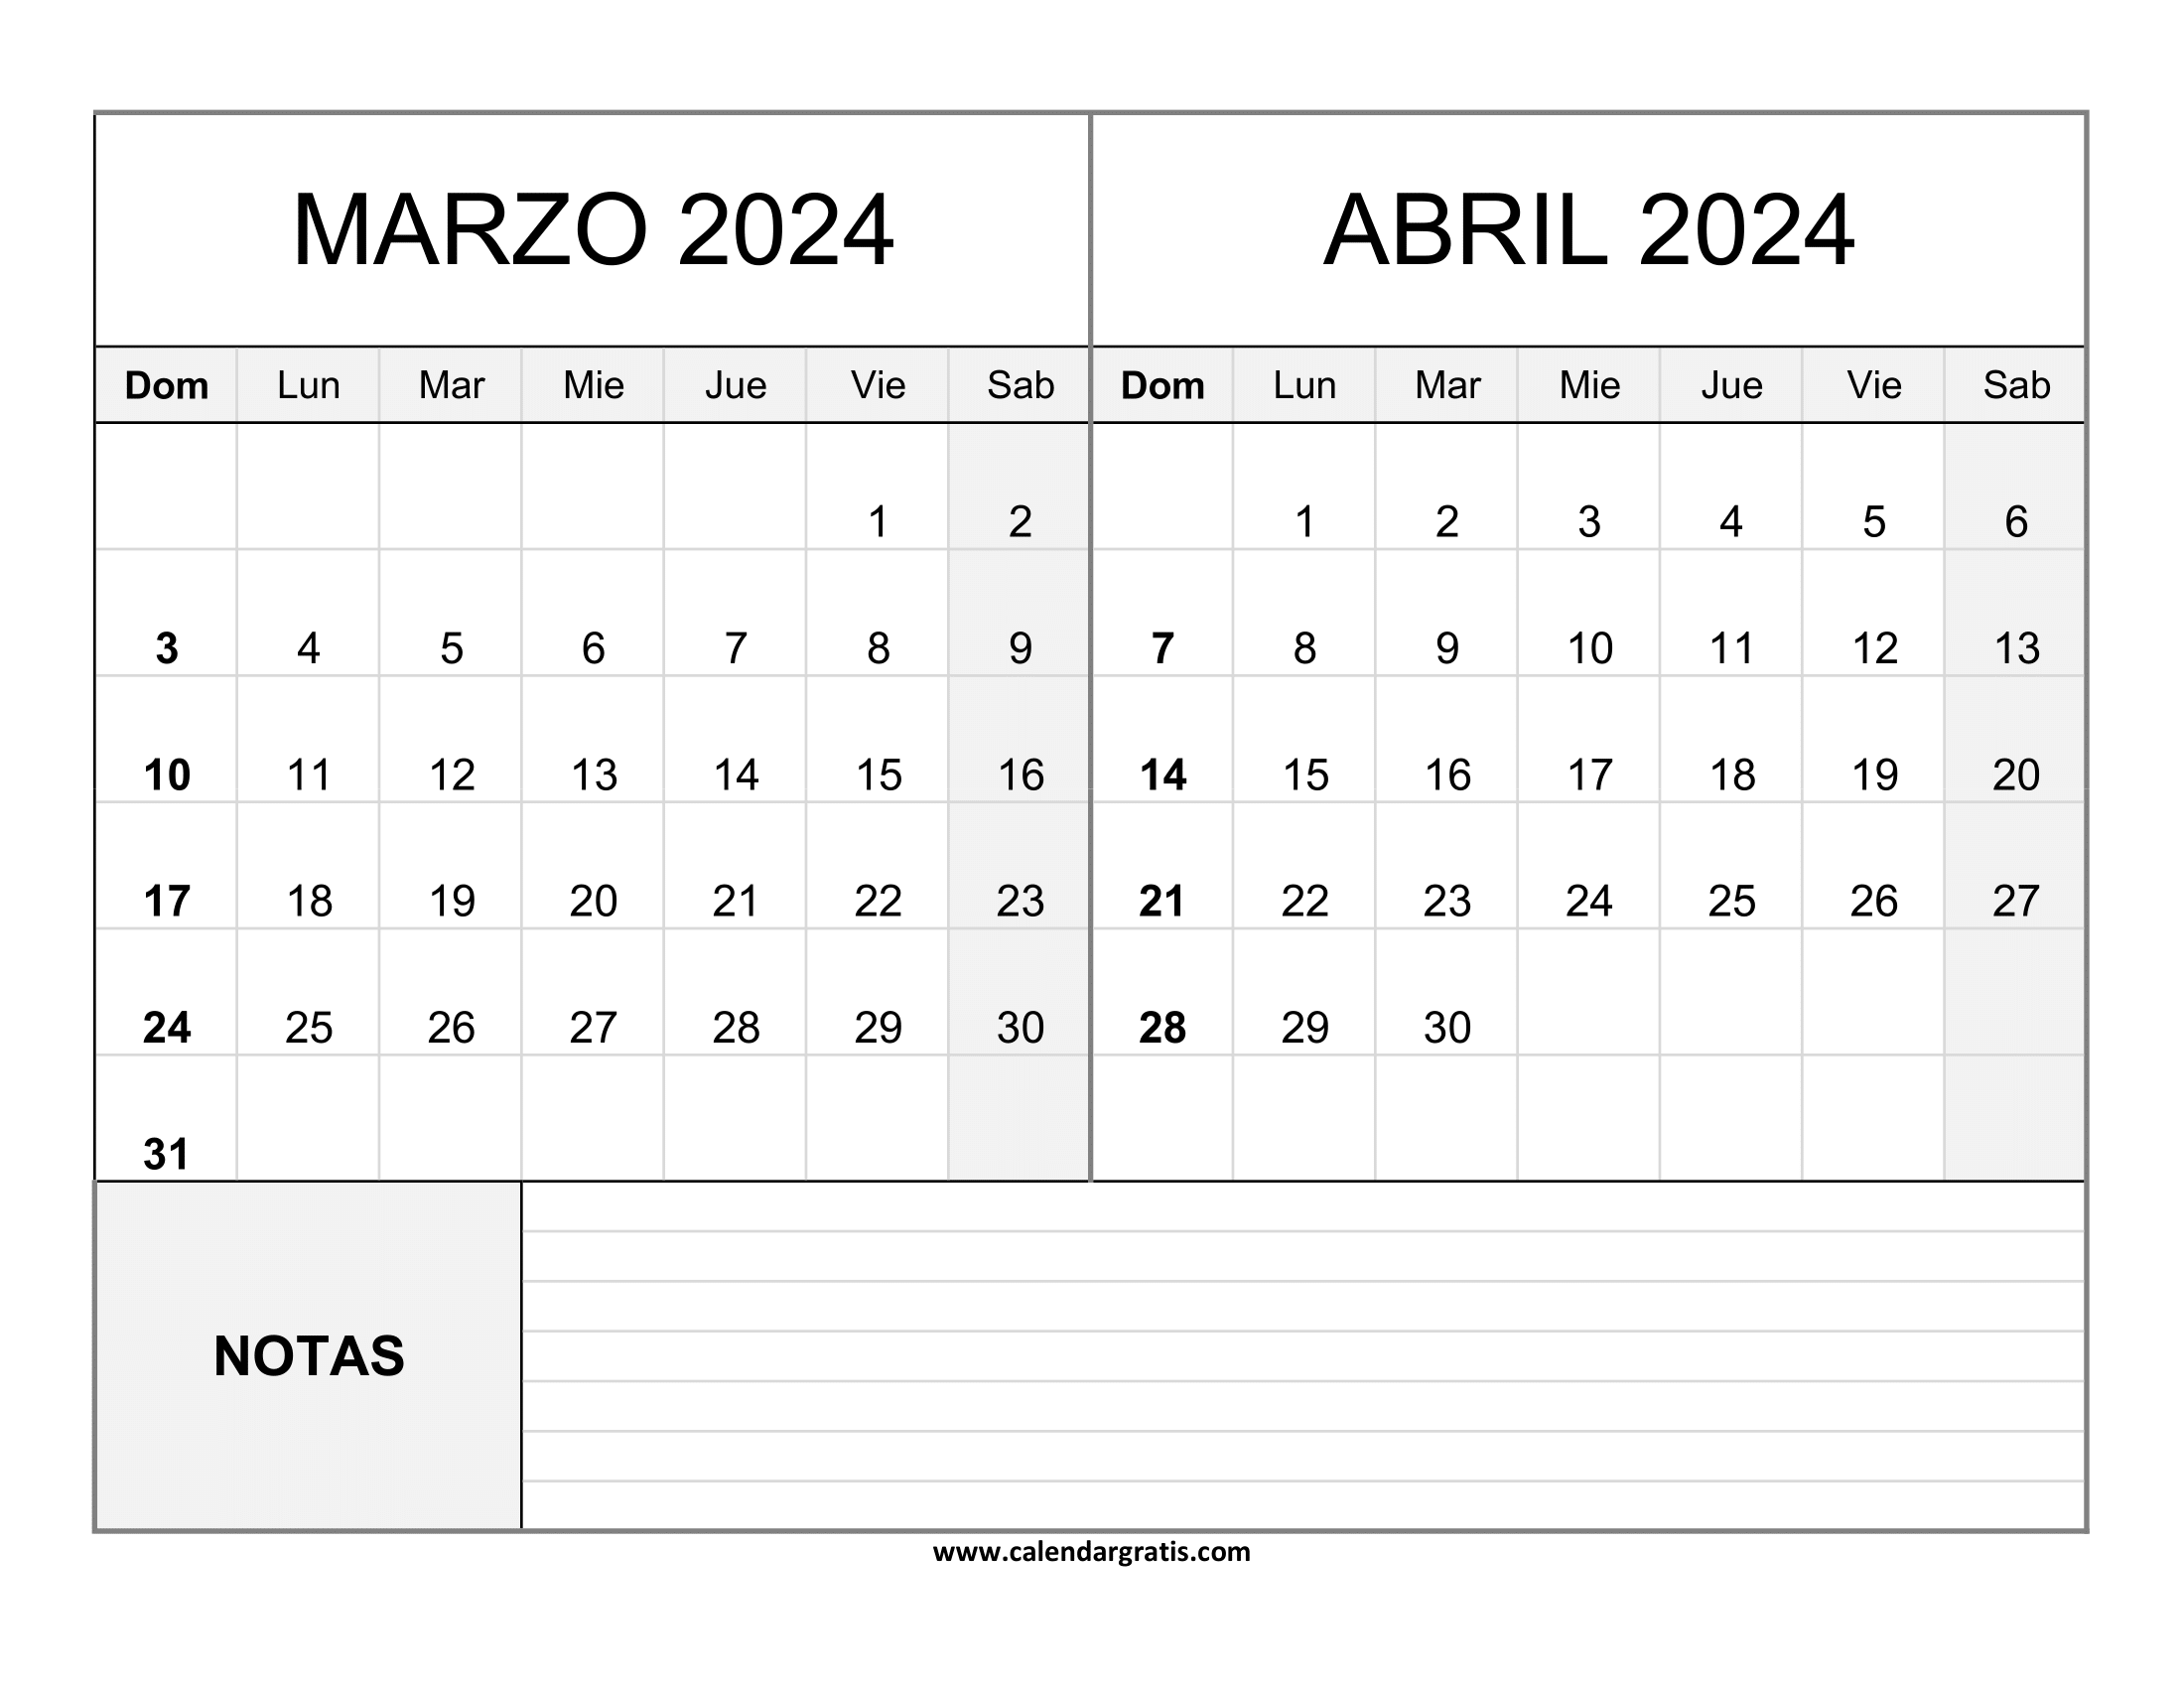 Calendario Marzo Abril 2024 gratis con Notas